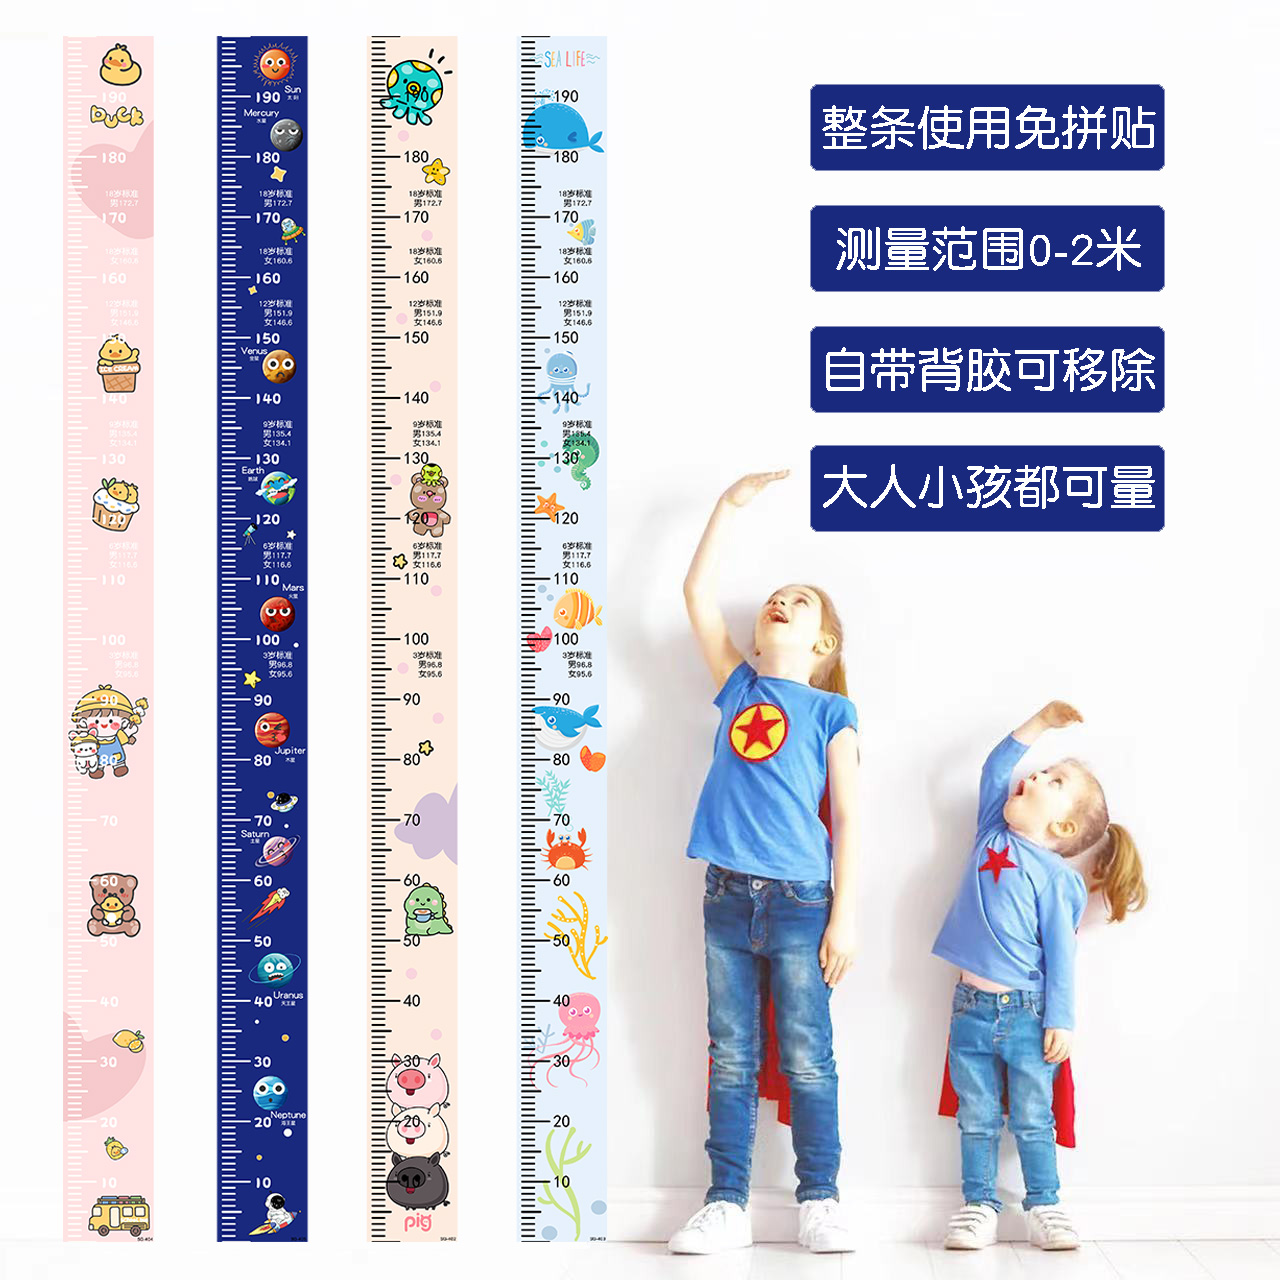 一整张卡通身高墙贴2米测量身高尺宝宝身高贴纸小孩儿童房间装饰